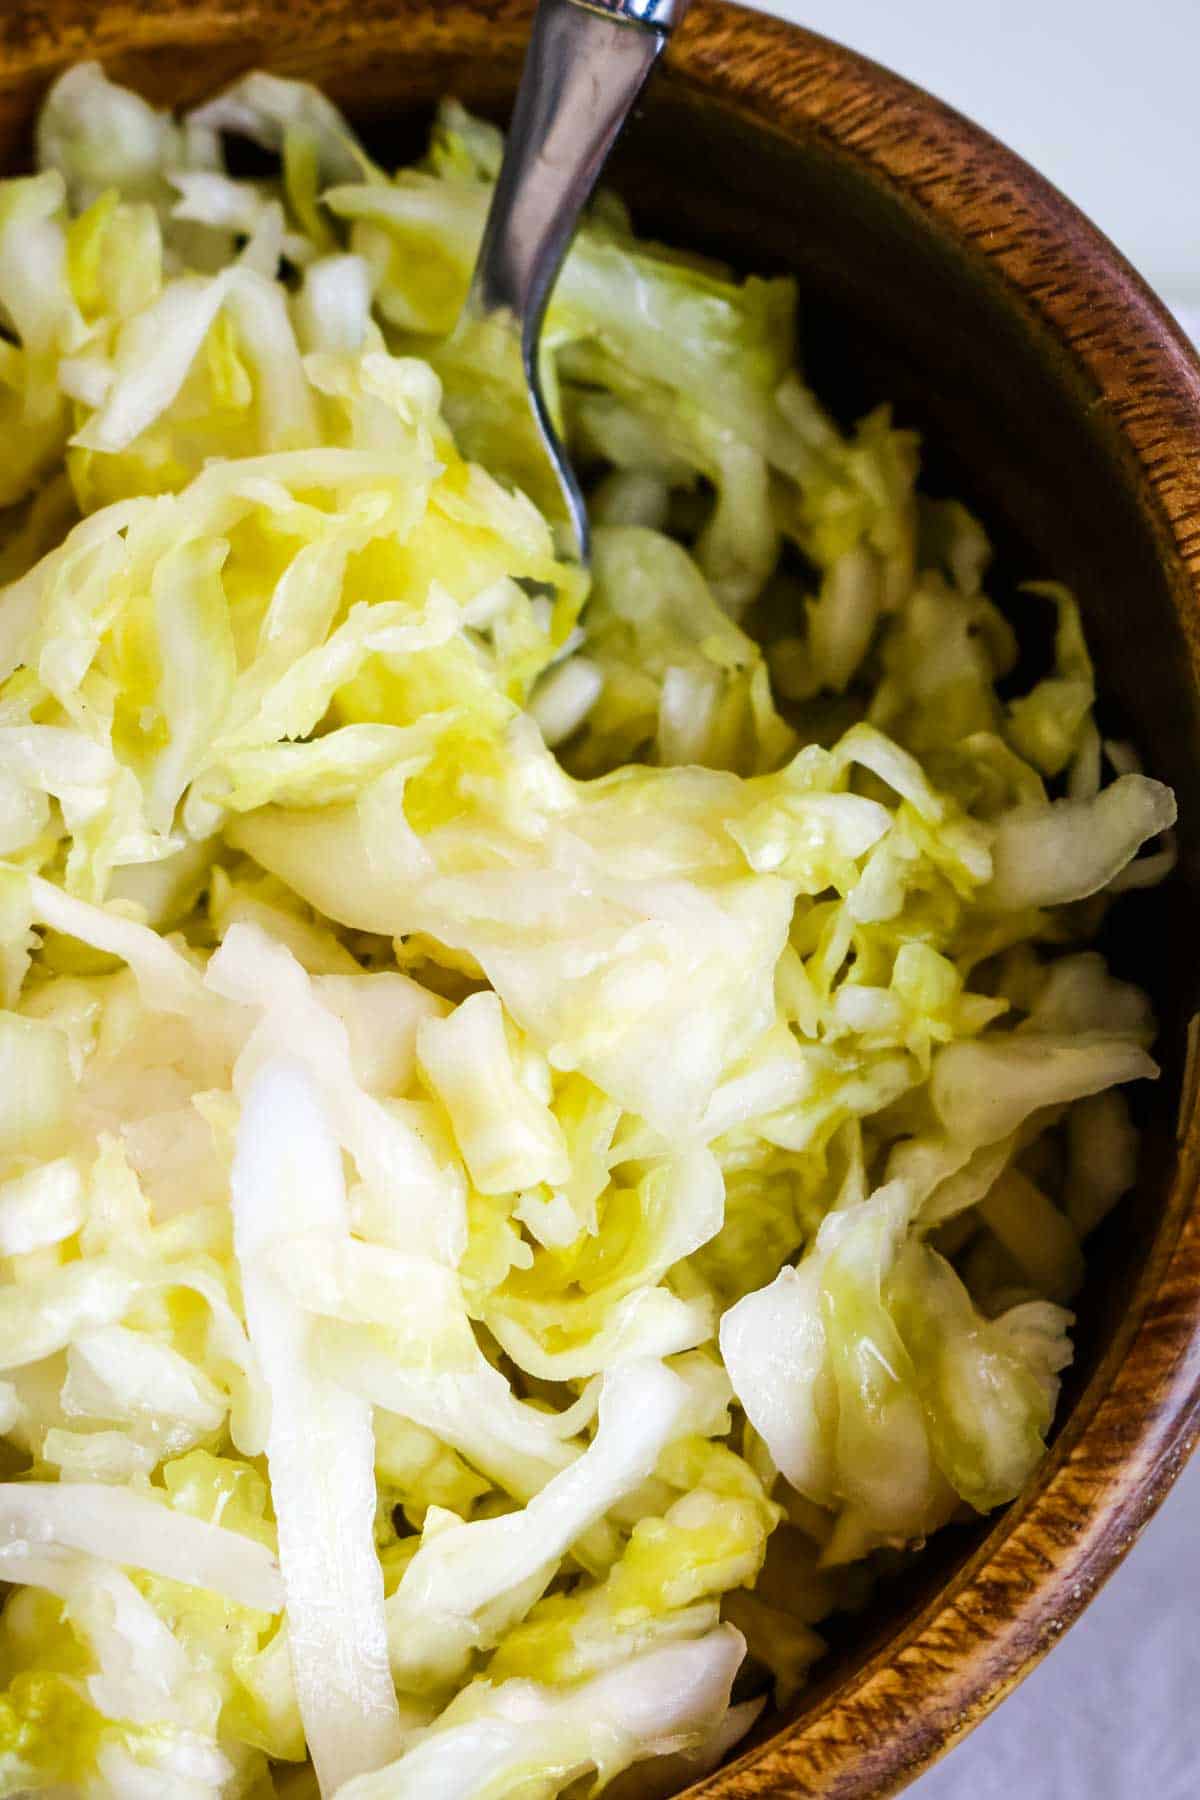 sauerkraut up close in wooden bowl.